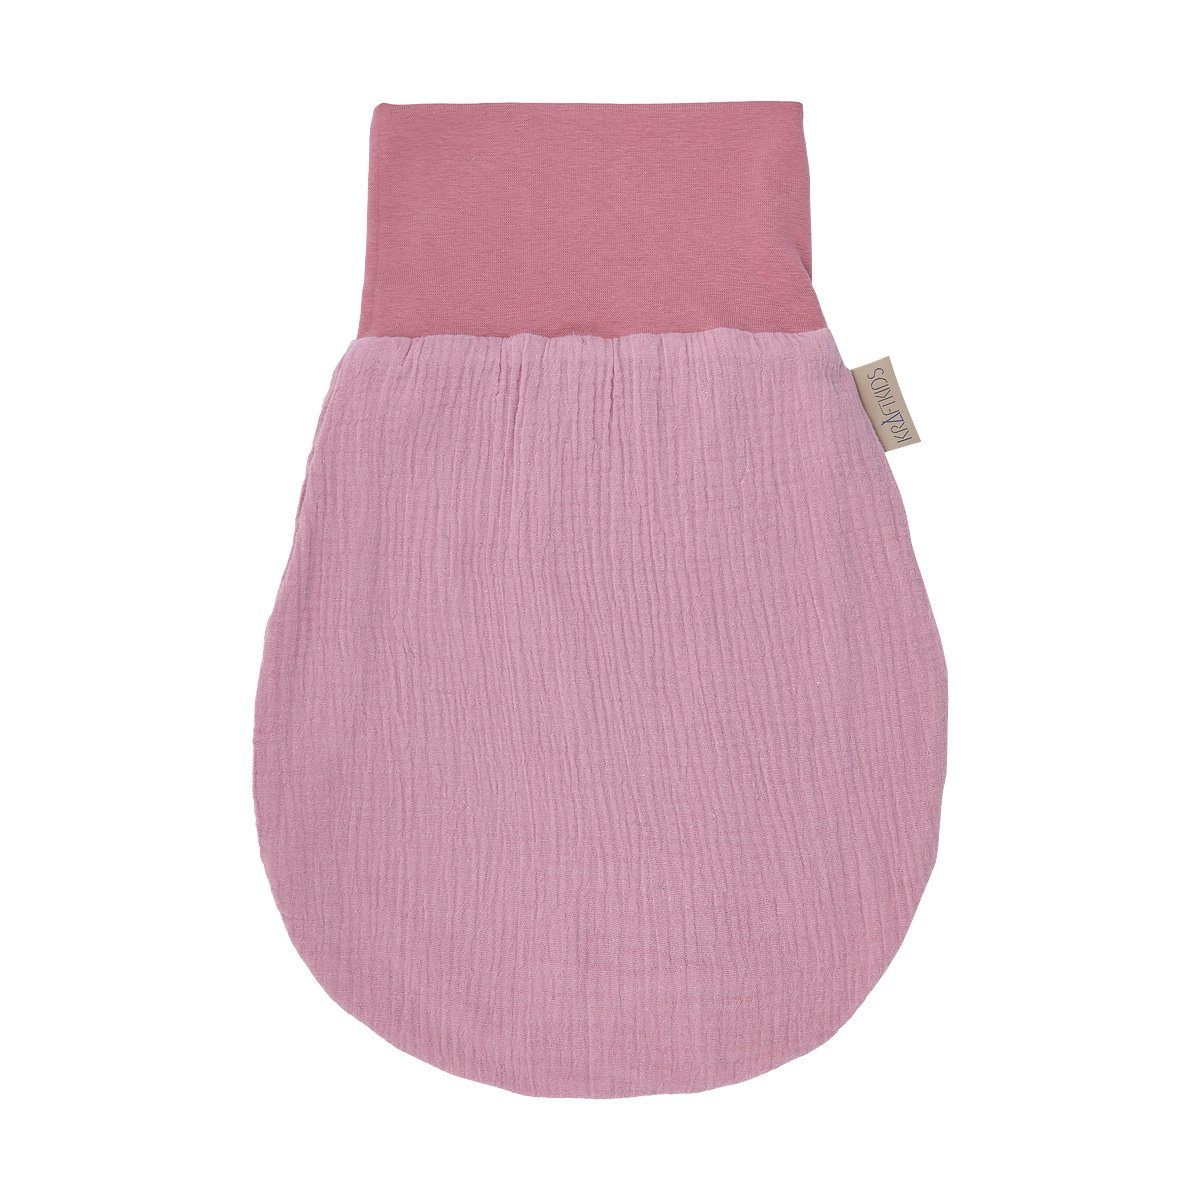 KraftKids Babyschlafsack Musselin rosa, Sommer/Frühling-Variante, 100% Baumwolle, hochwärtiger Stoff, zwei Schichten Stoff